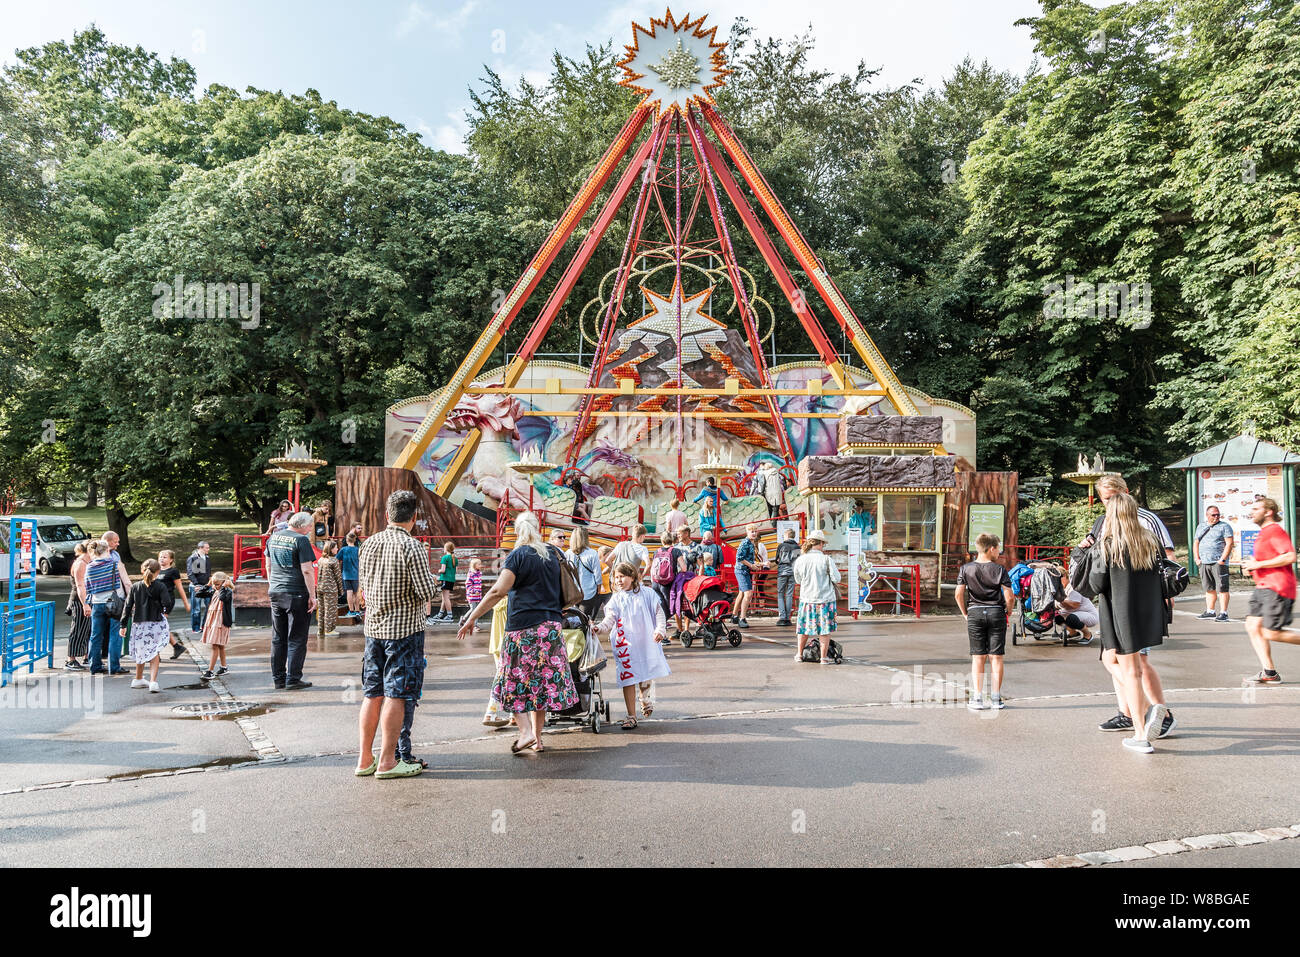 Les gens en face de la Swinging ship dans le parc d'attractions Bakken, Copenhague, 7 août 2019 Banque D'Images